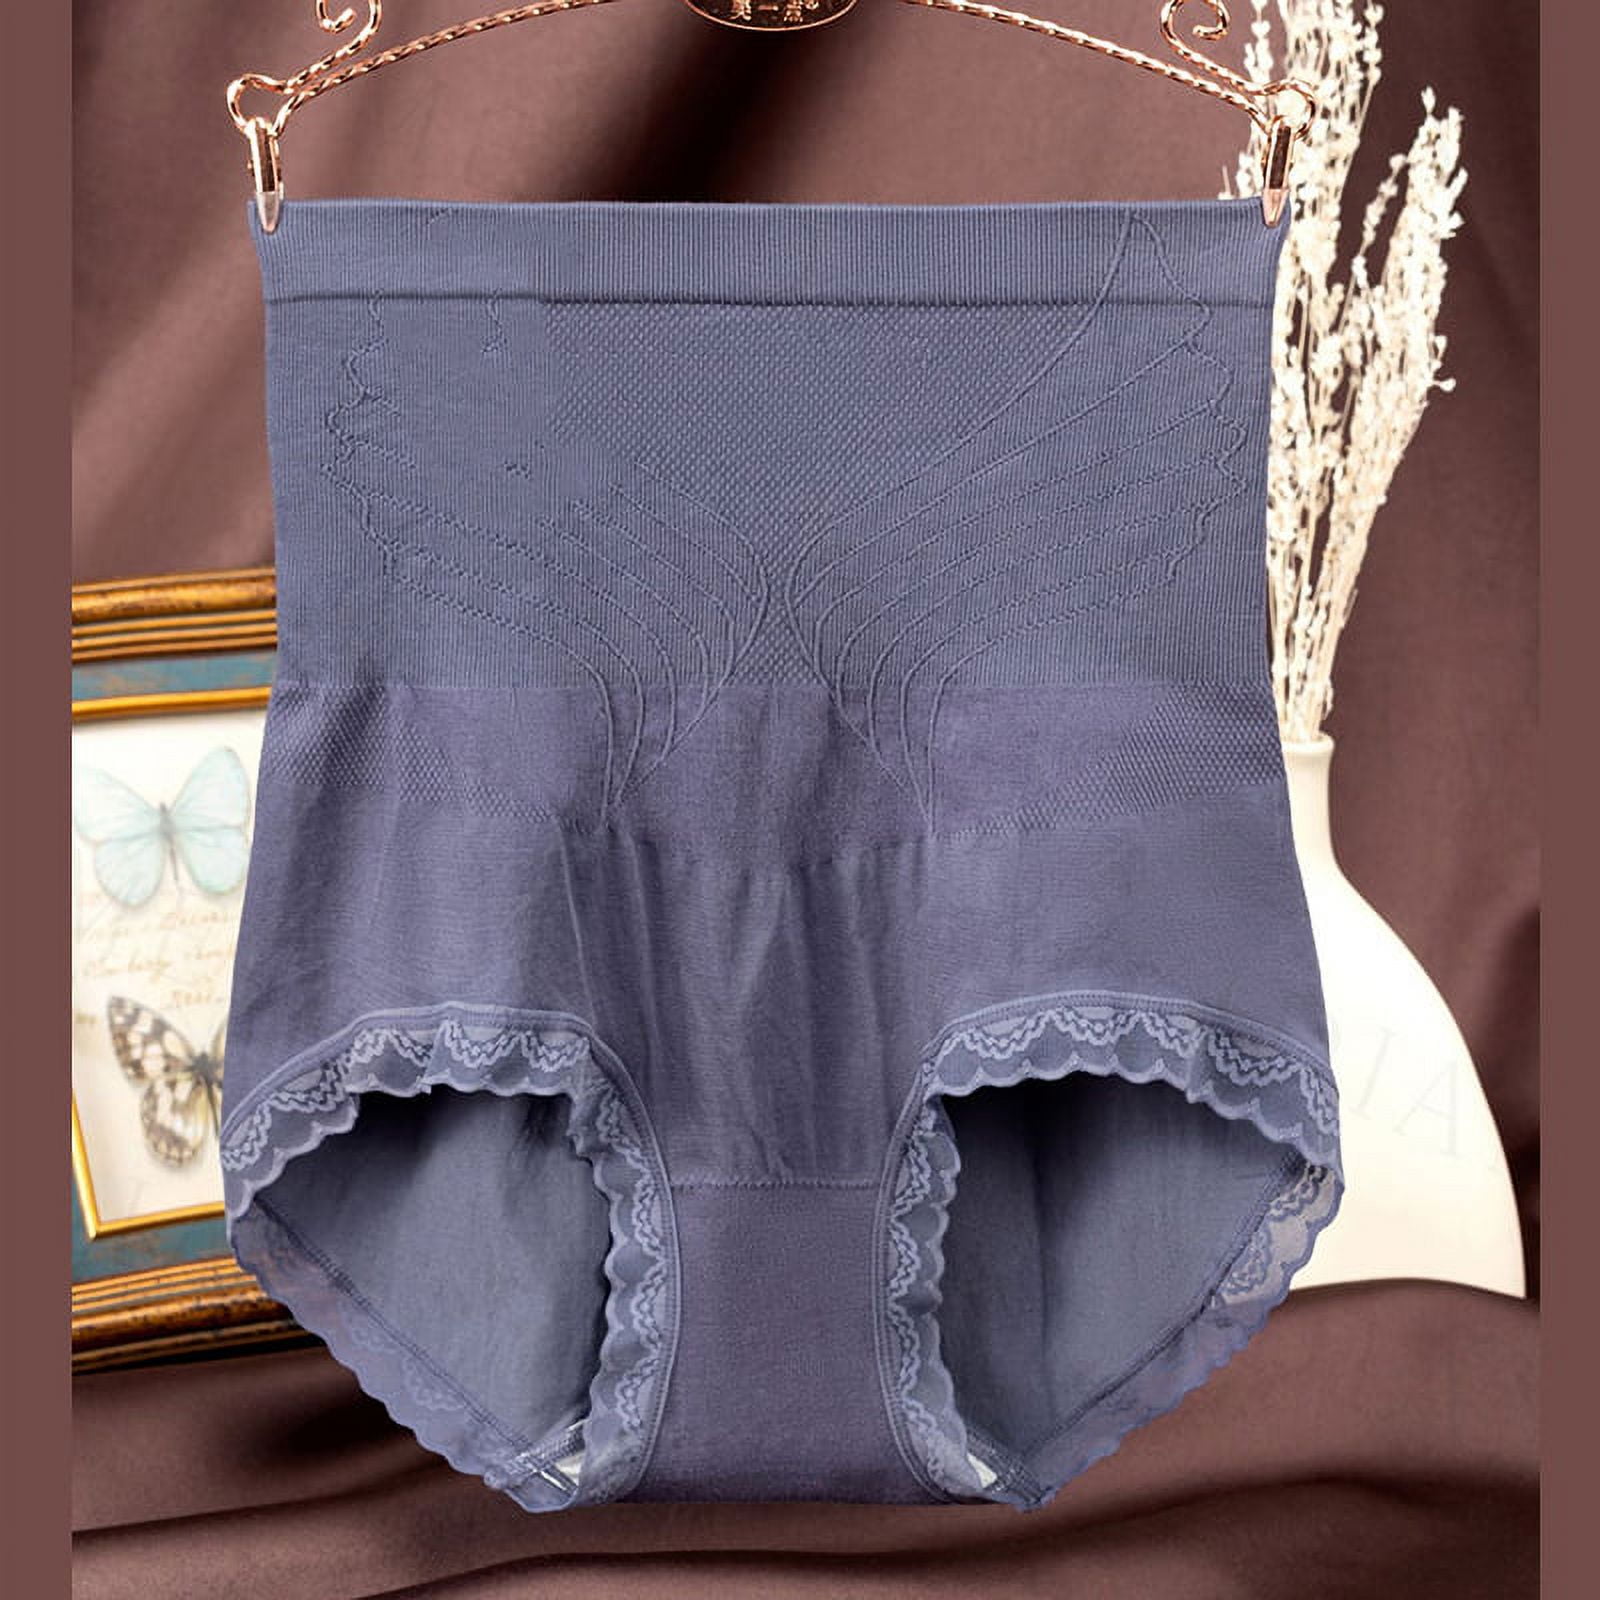 Ladies Underwear High Waist Cotton Panty Full Brief Seamless